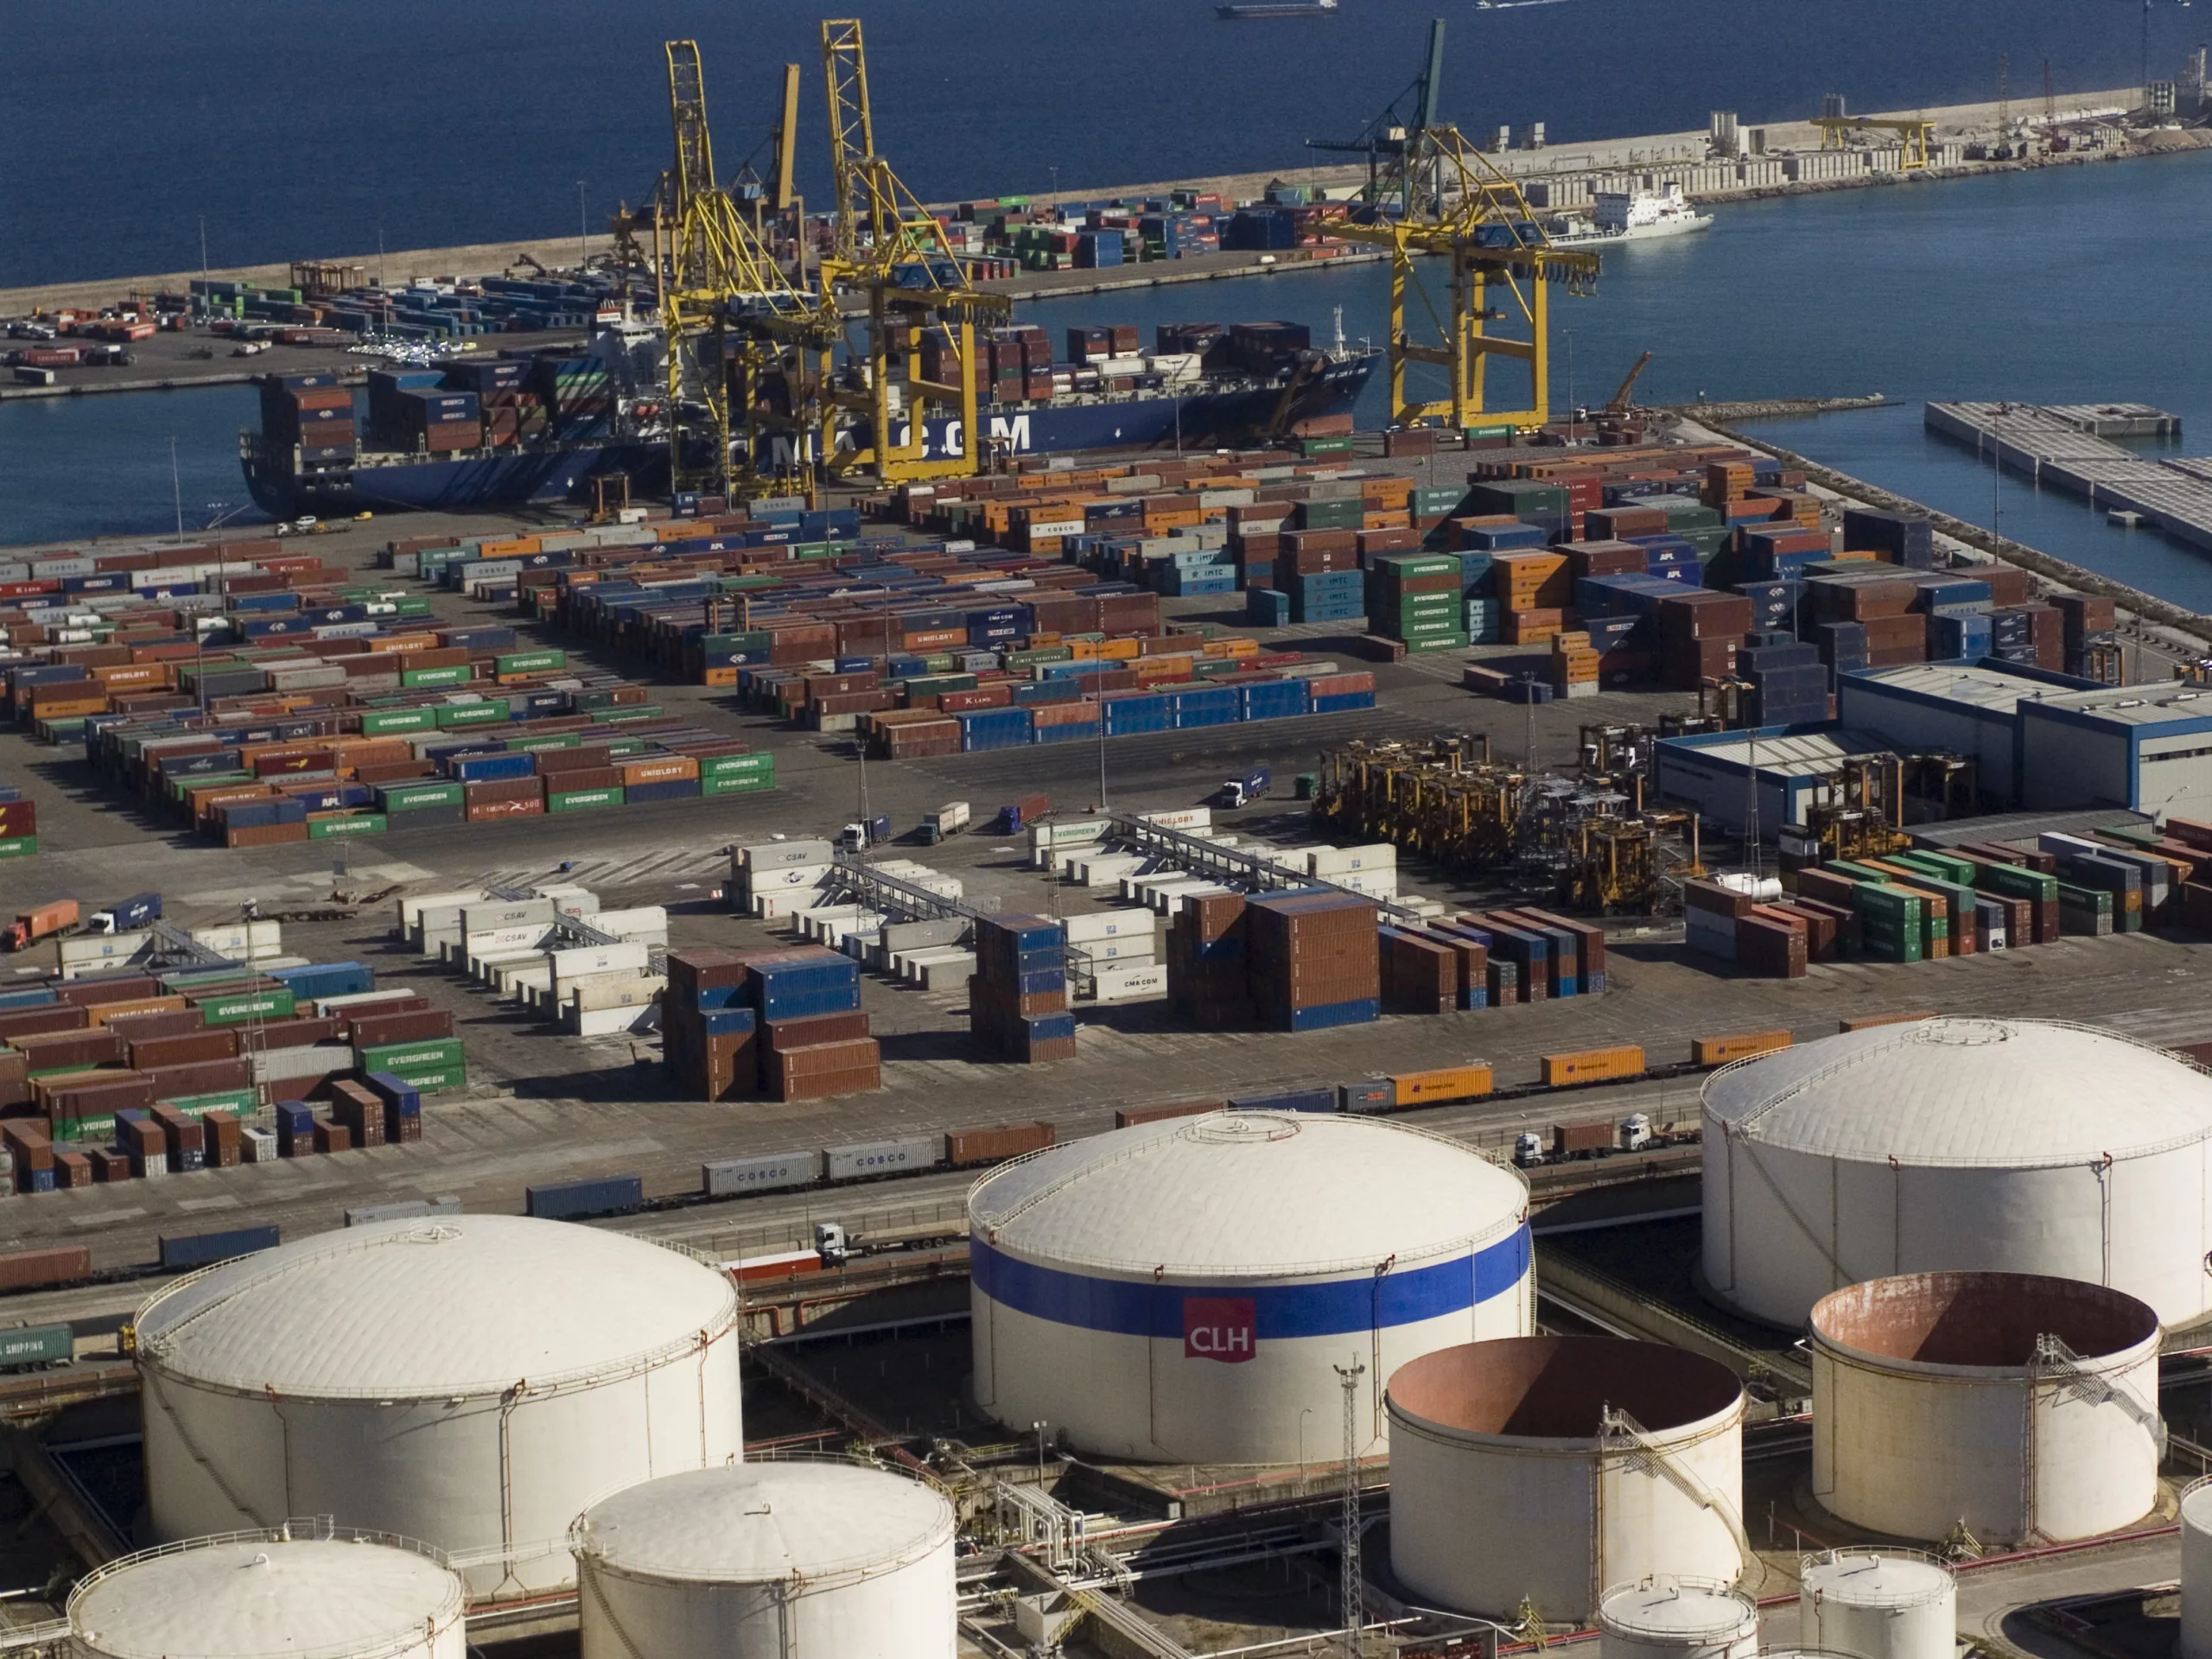 Els nous accessos terrestres i la plena capacitat de gestió comercial de les taxes són dos dels revulsius que el port de Barcelona necessita